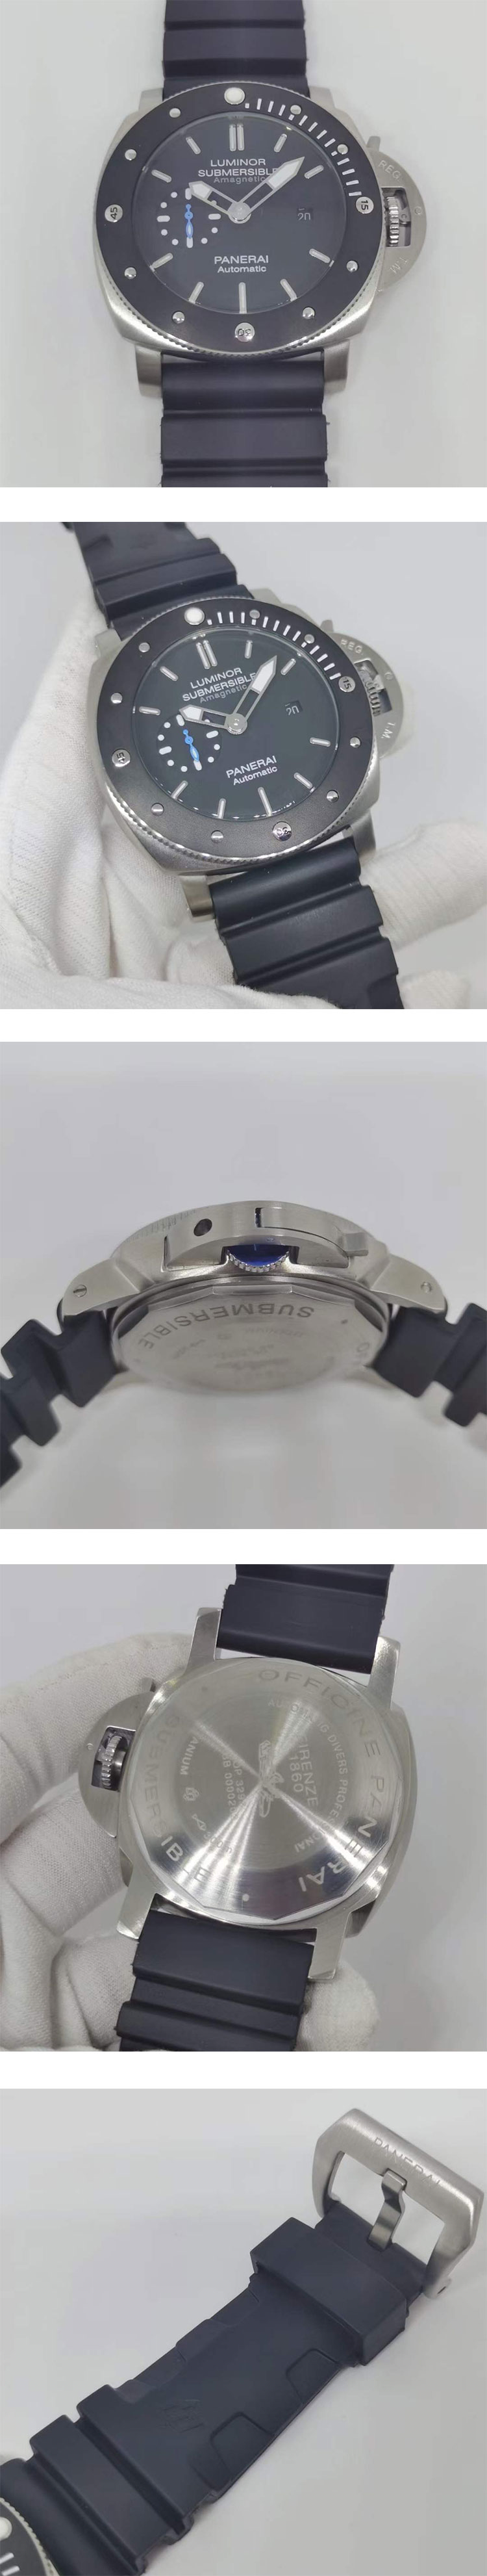 オフィチーネ パネライコピーPAM01389 サブマーシブル 1950 アマグネティック チタニオ 47mm 激安腕時計挑戦